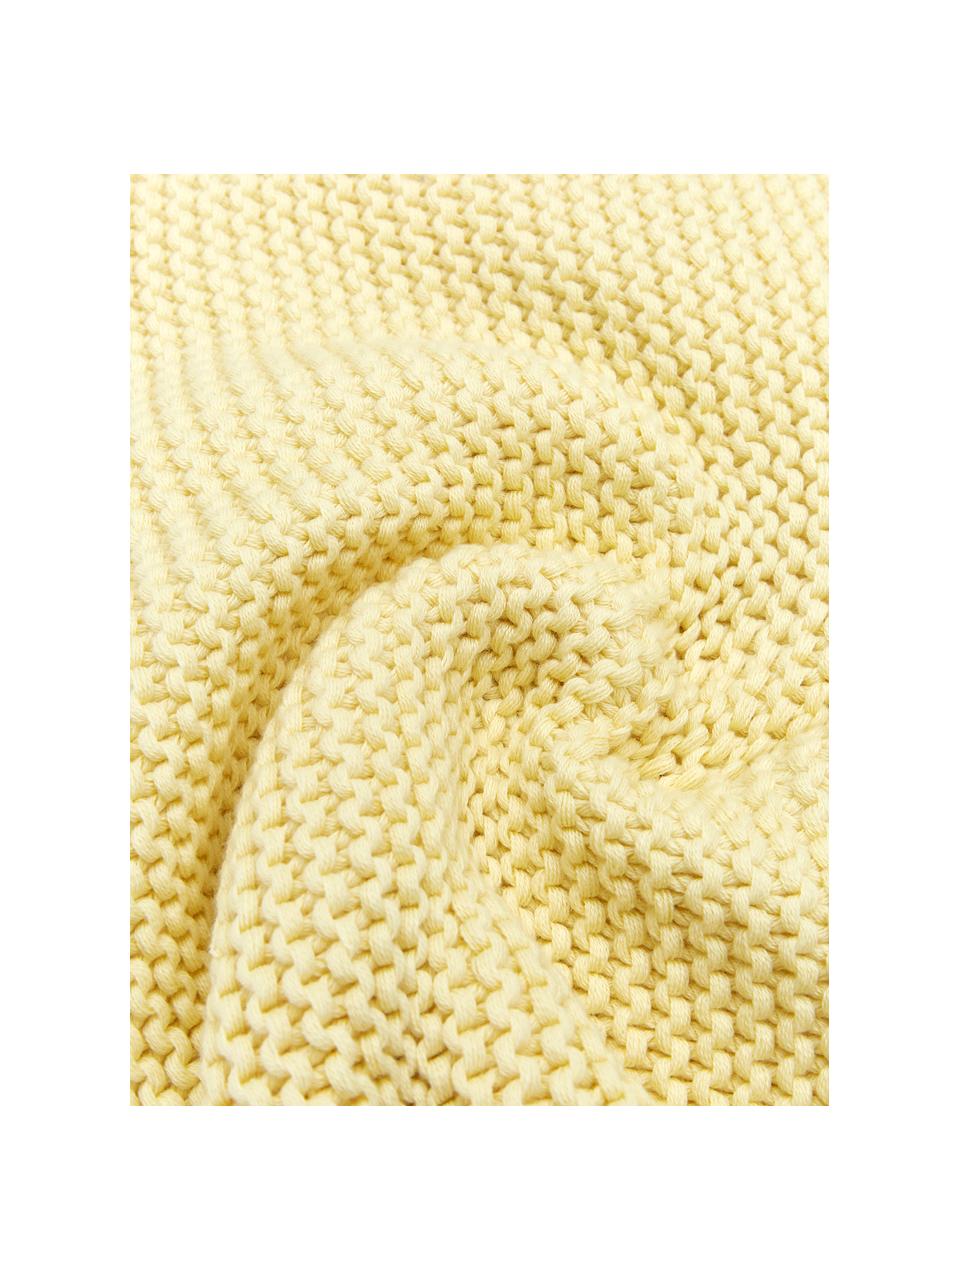 Coperta a maglia in cotone organico giallo chiaro Adalyn, 100% cotone organico, certificato GOTS, Giallo chiaro, Larg. 150 x Lung. 200 cm